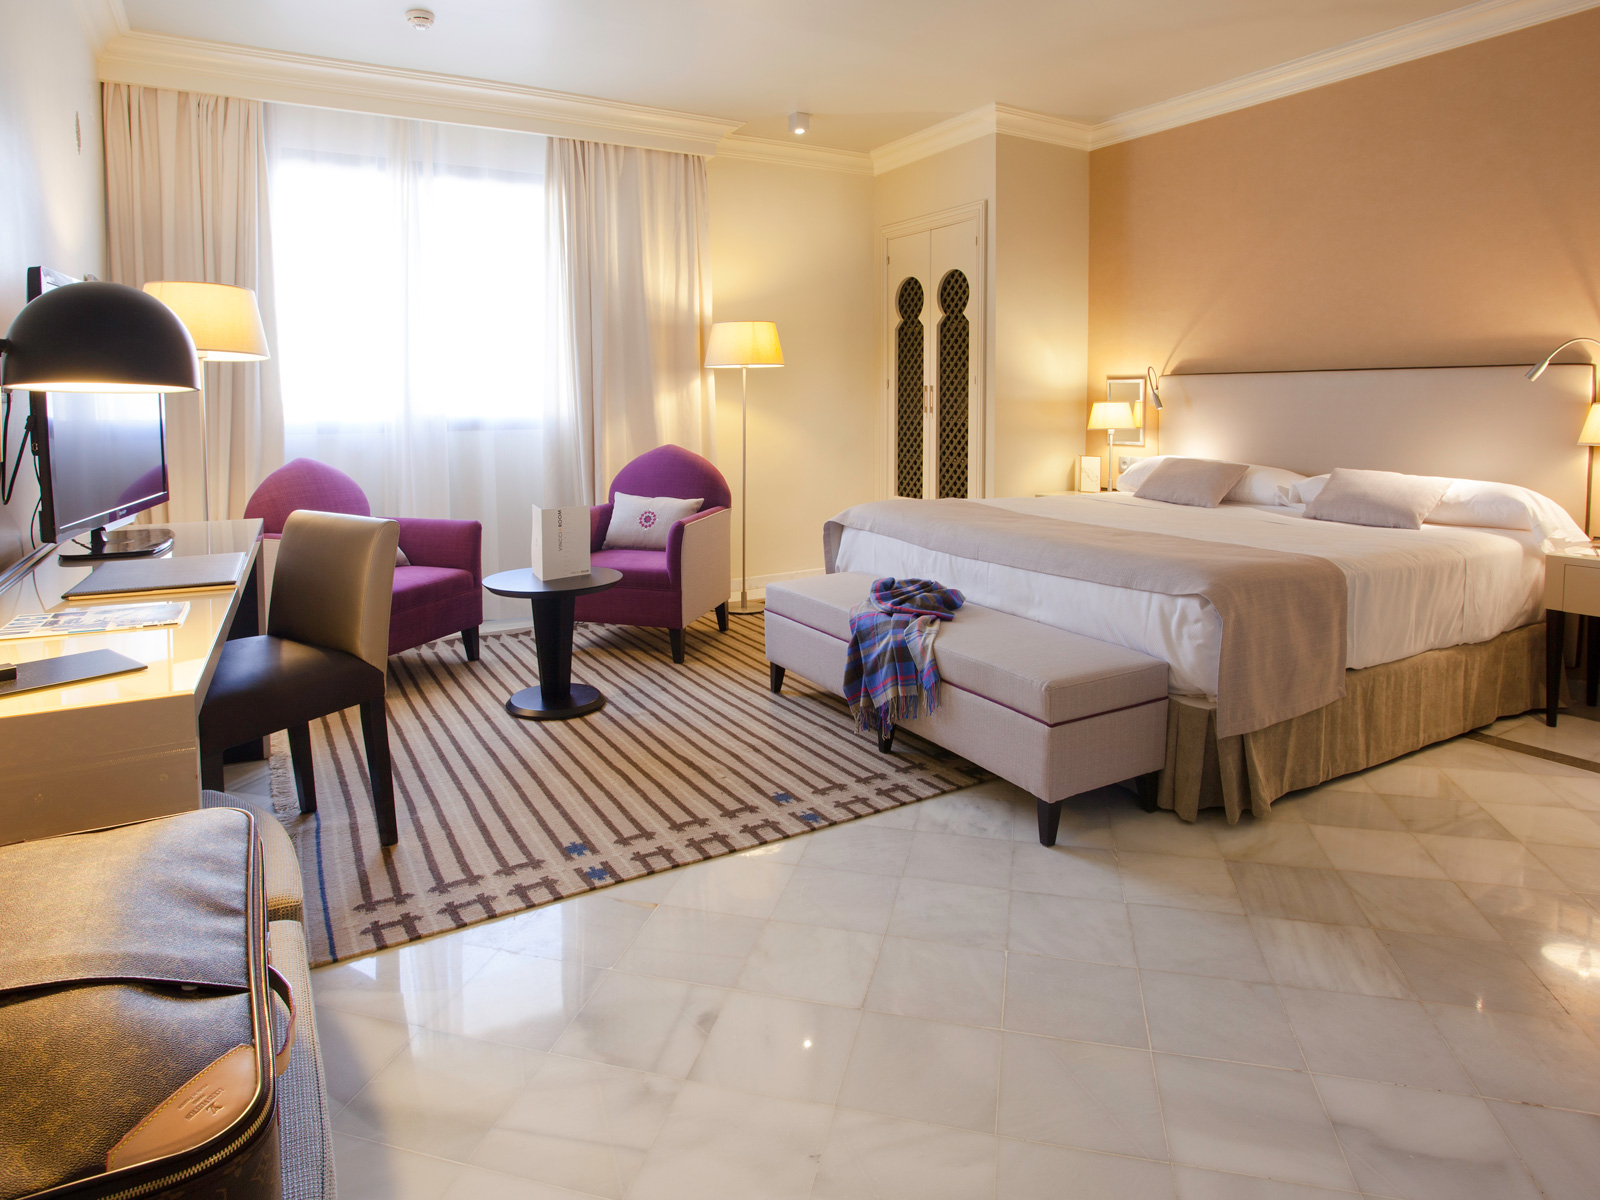 Ofertas Hotel Vincci Granada Albayzín - Anticípate y ahorra - 20%!